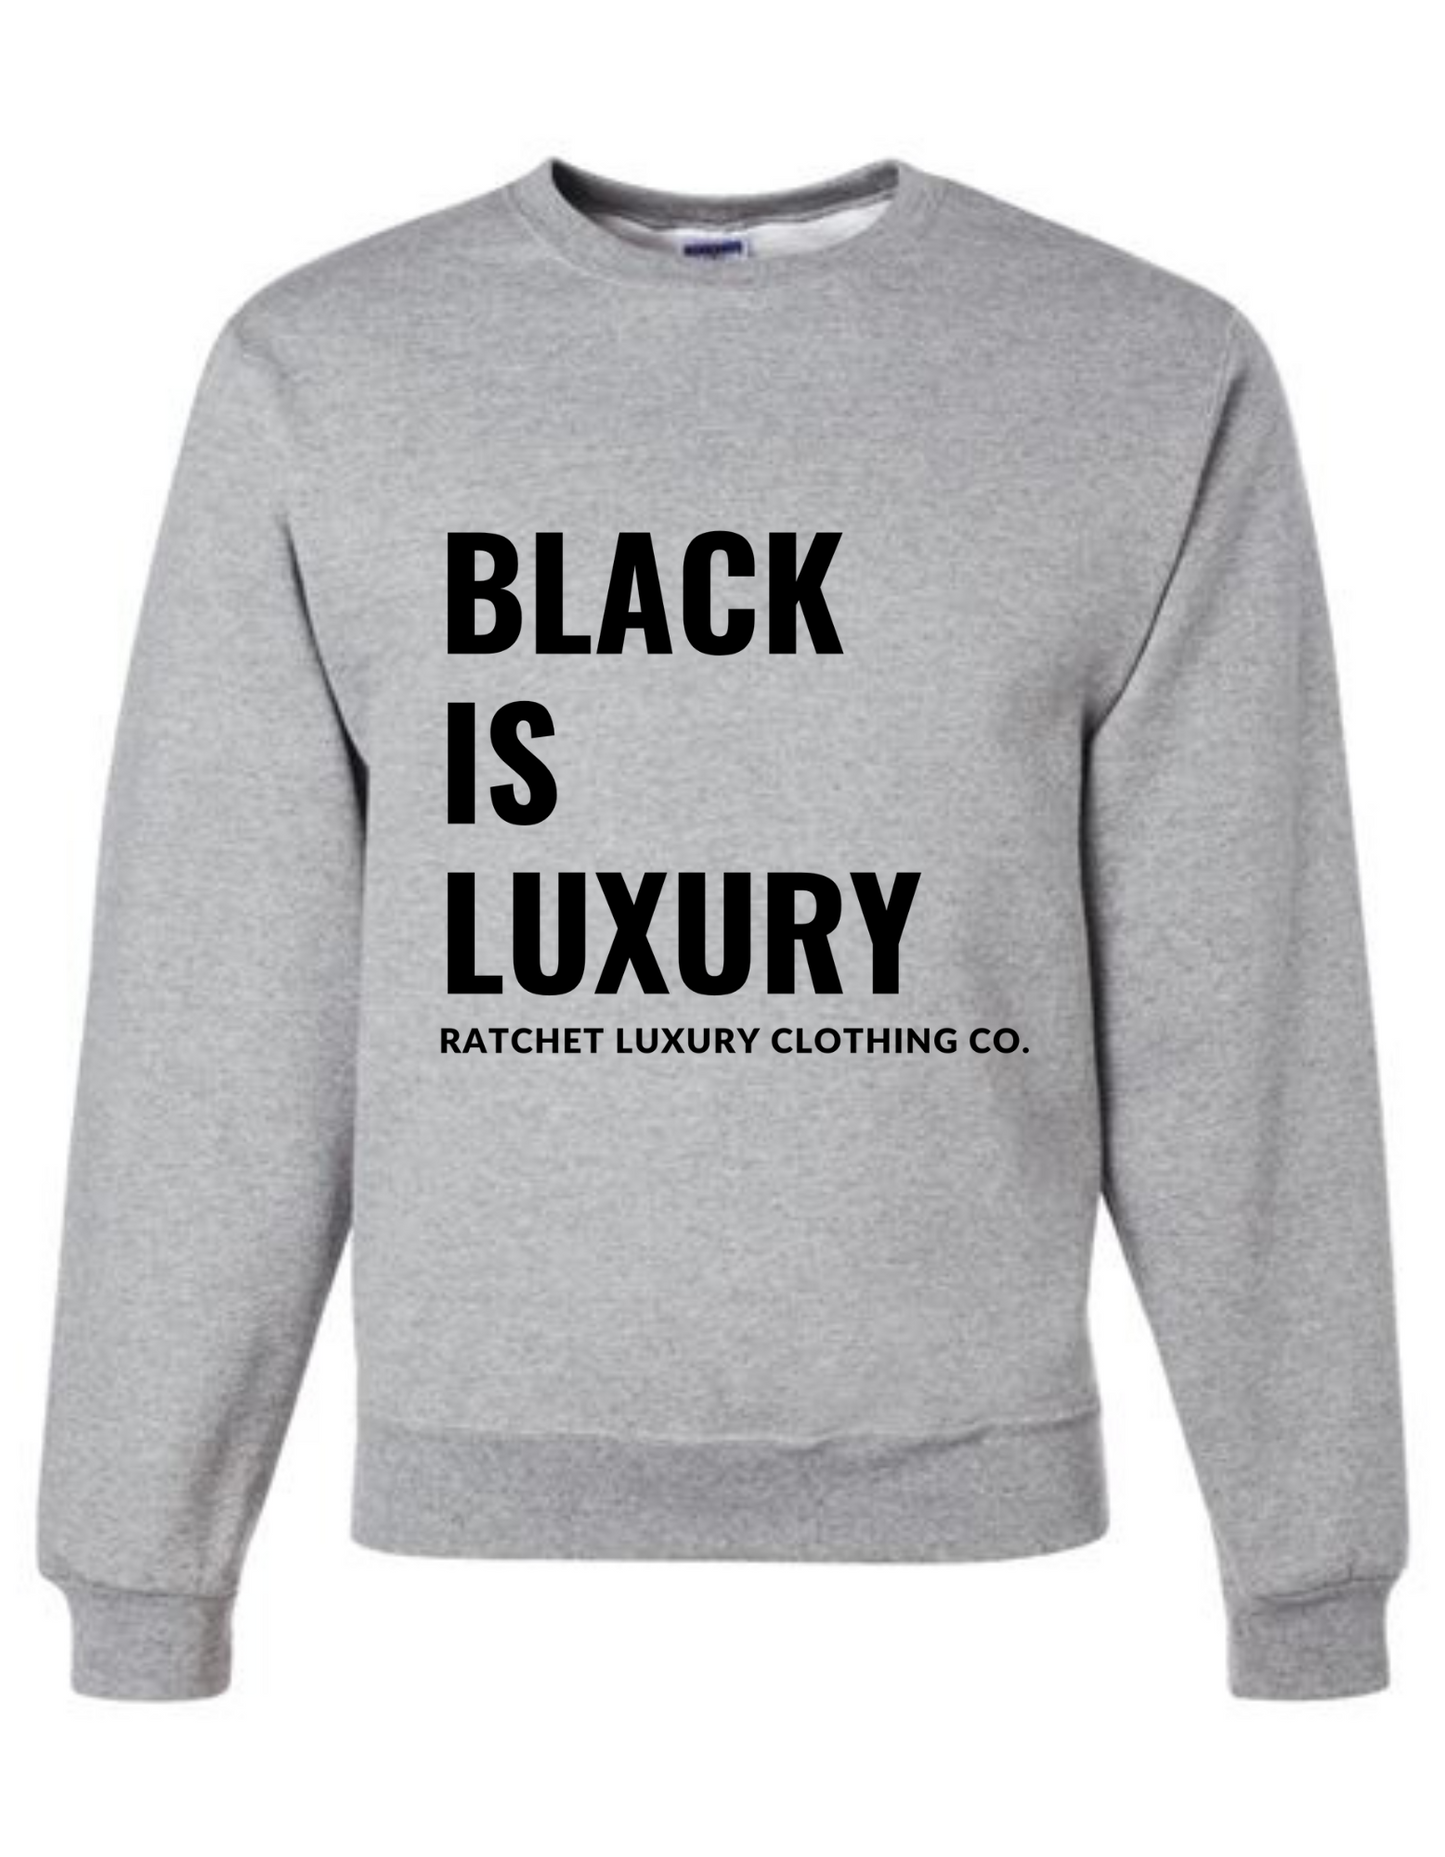 BLACK IS LUXURY CREWNECK